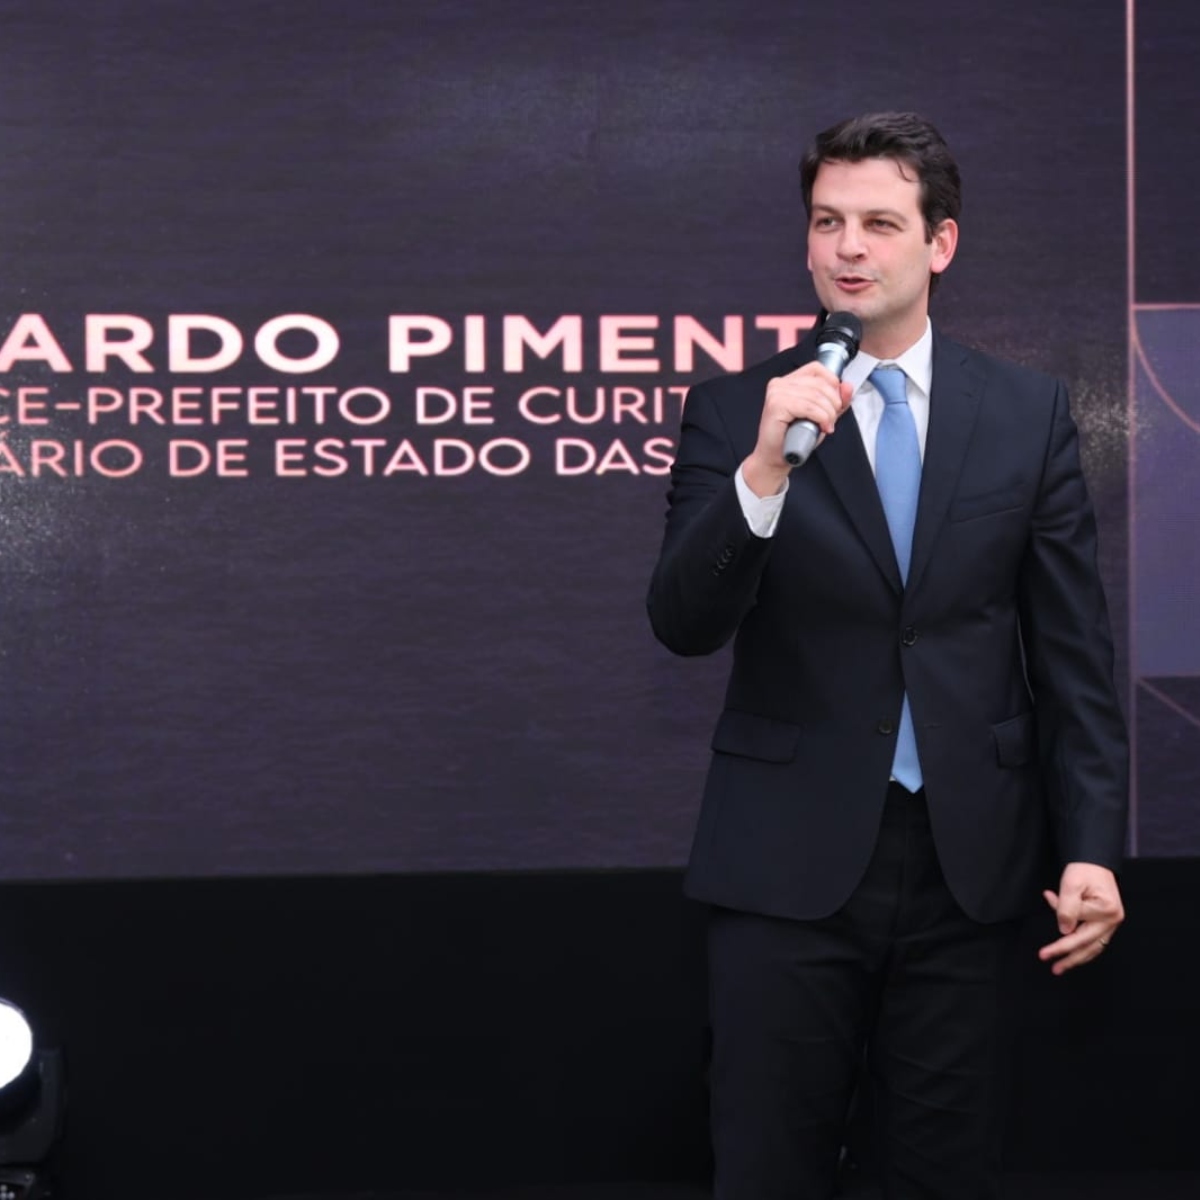  Eduardo Pimentel diz estar no caminho certo no Prêmio Personalidades TOPVIEW 